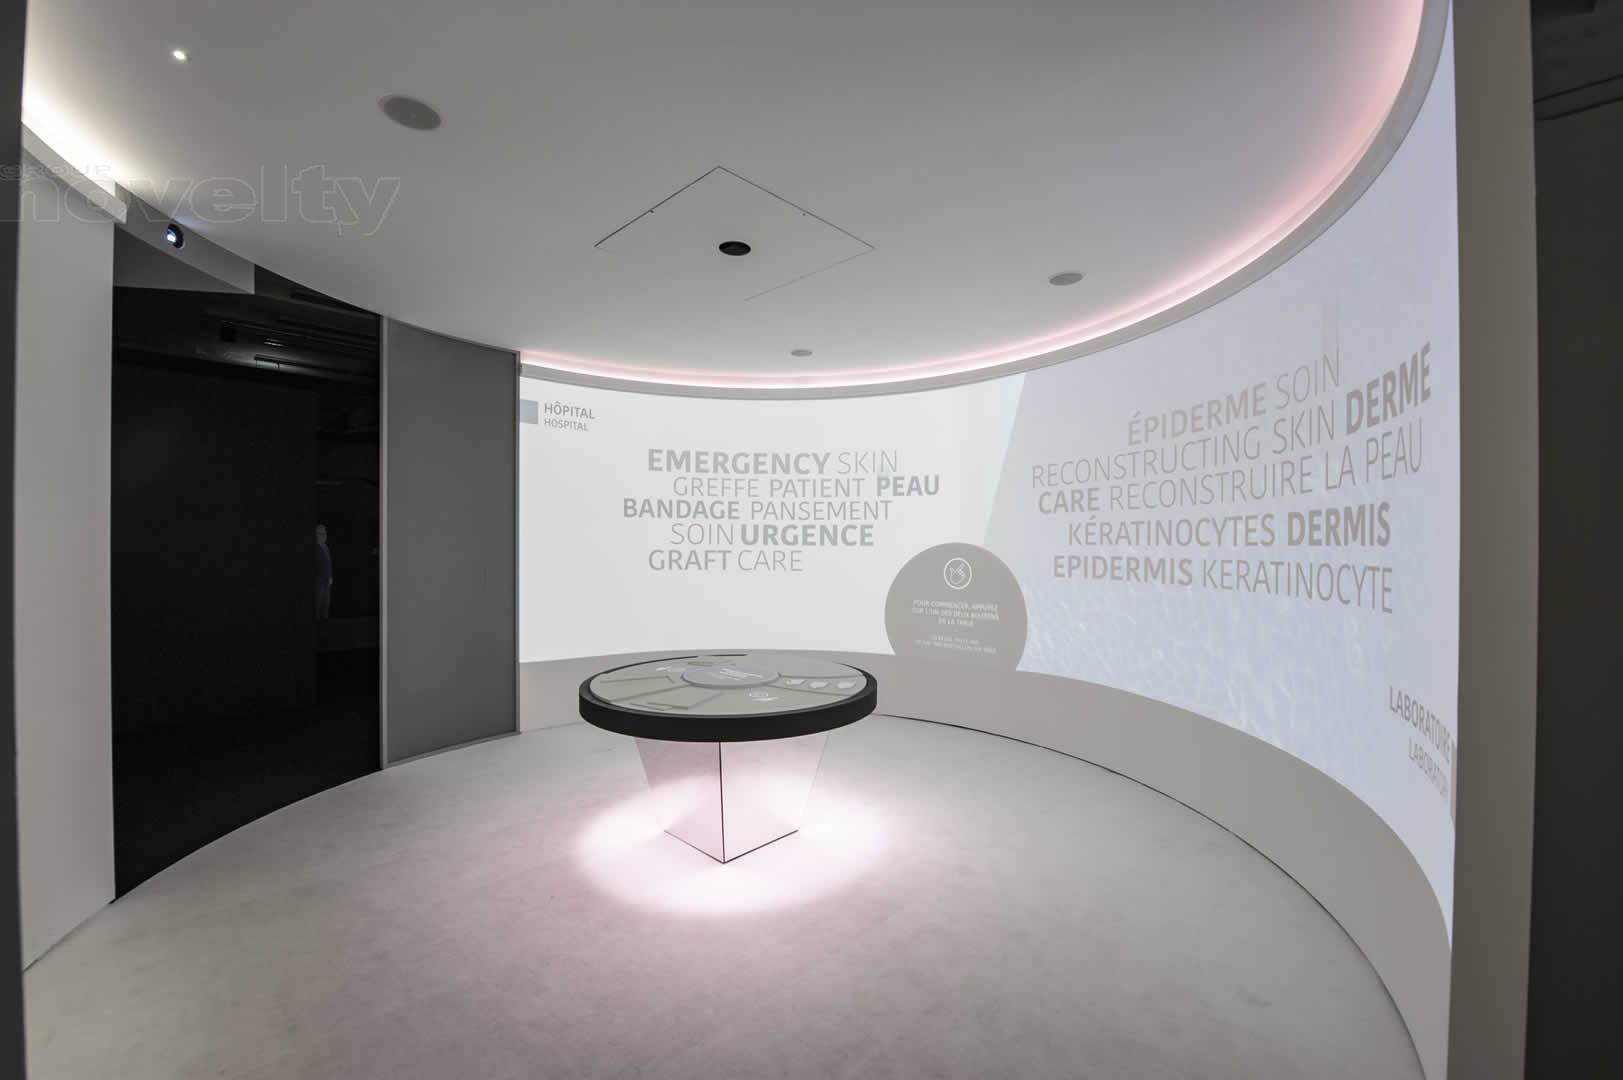 Visuel Intégration lumière by NOVELTY pour l'exposition "Dans ma peau" avec La fabrique créative